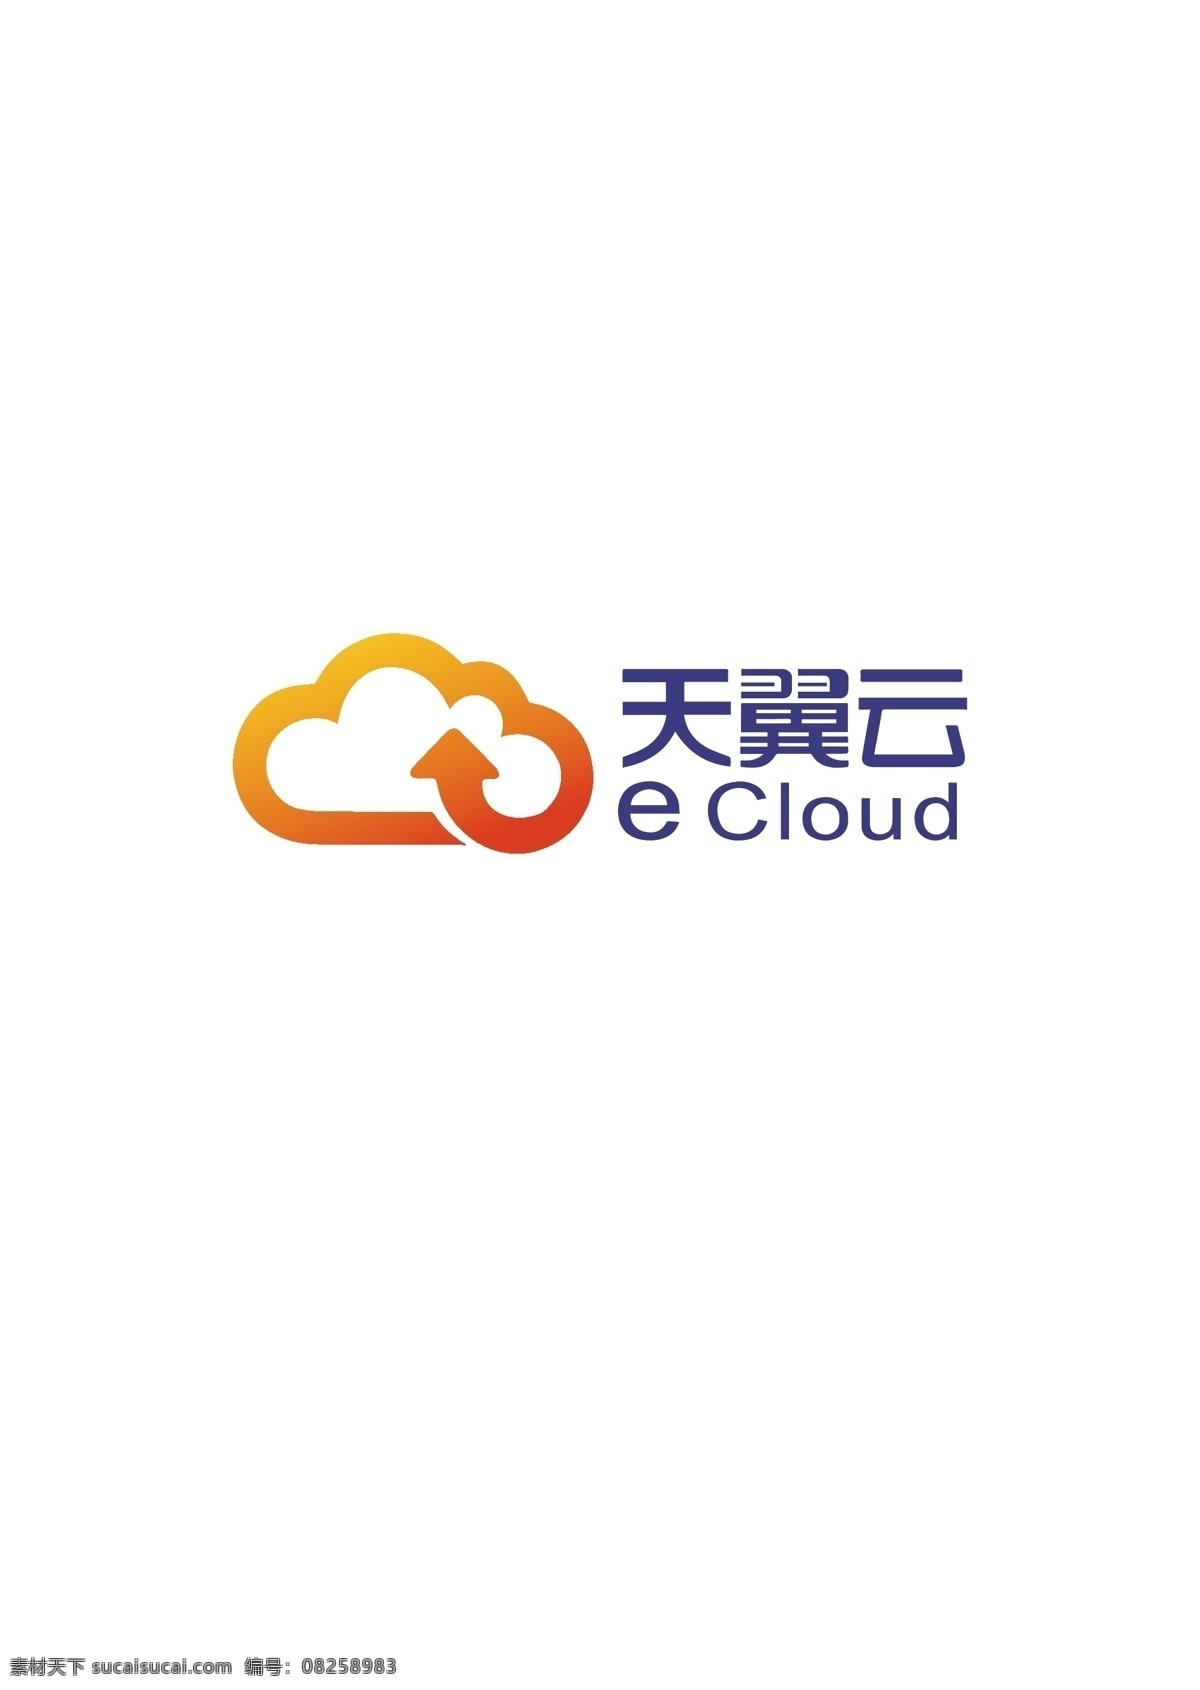 天翼 云 logo 矢量图 天翼云 云服务器 云计算 logo设计